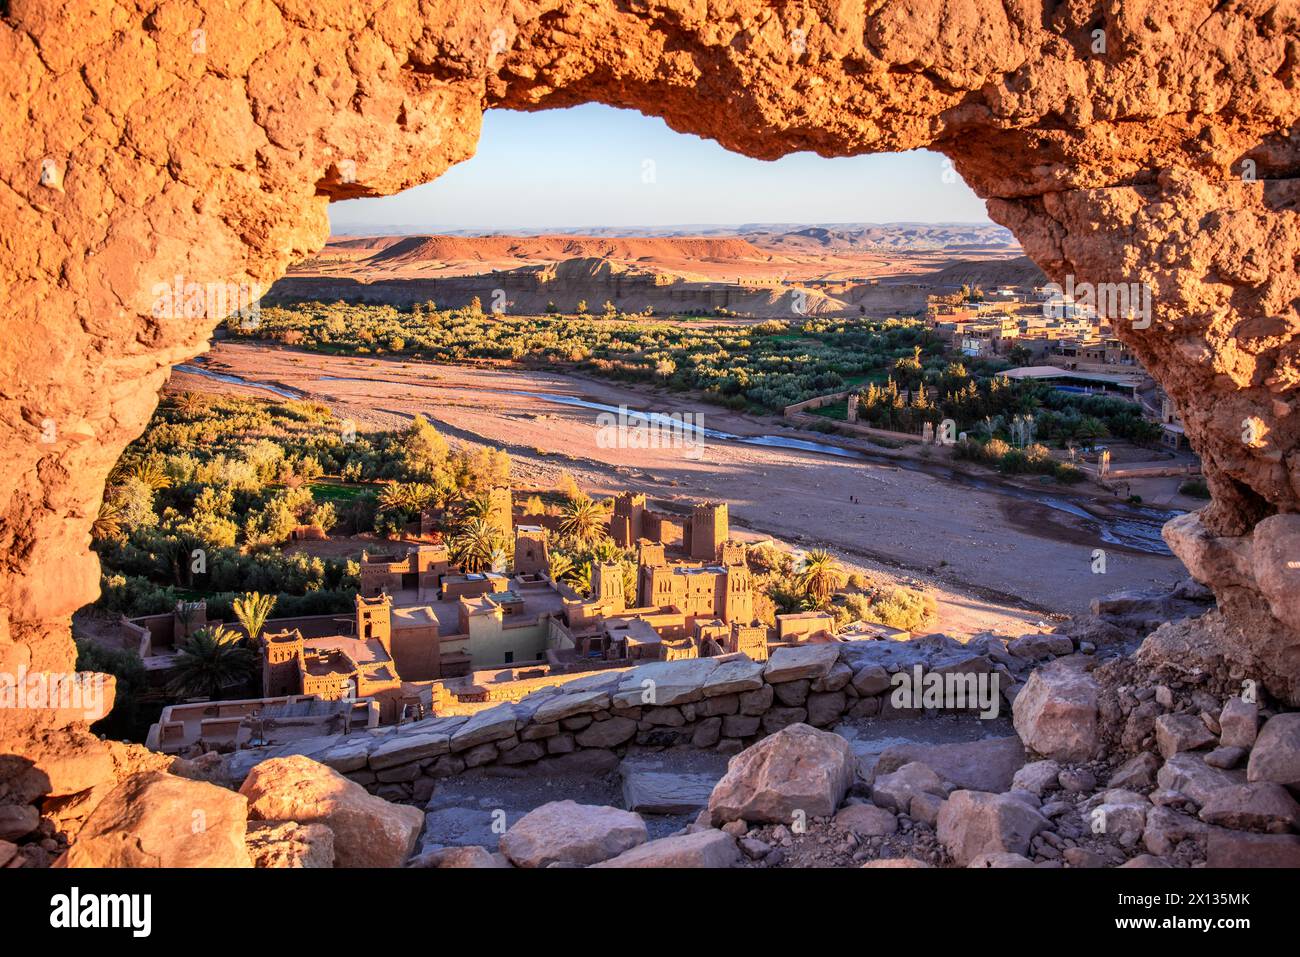 AIT-Benhaddou, Provinz Ouarzazate, eindrucksvolles Beispiel für Tonarchitektur und Kasbah im Süden Marokkos, Atlasgebirge im Hintergrund. Stockfoto